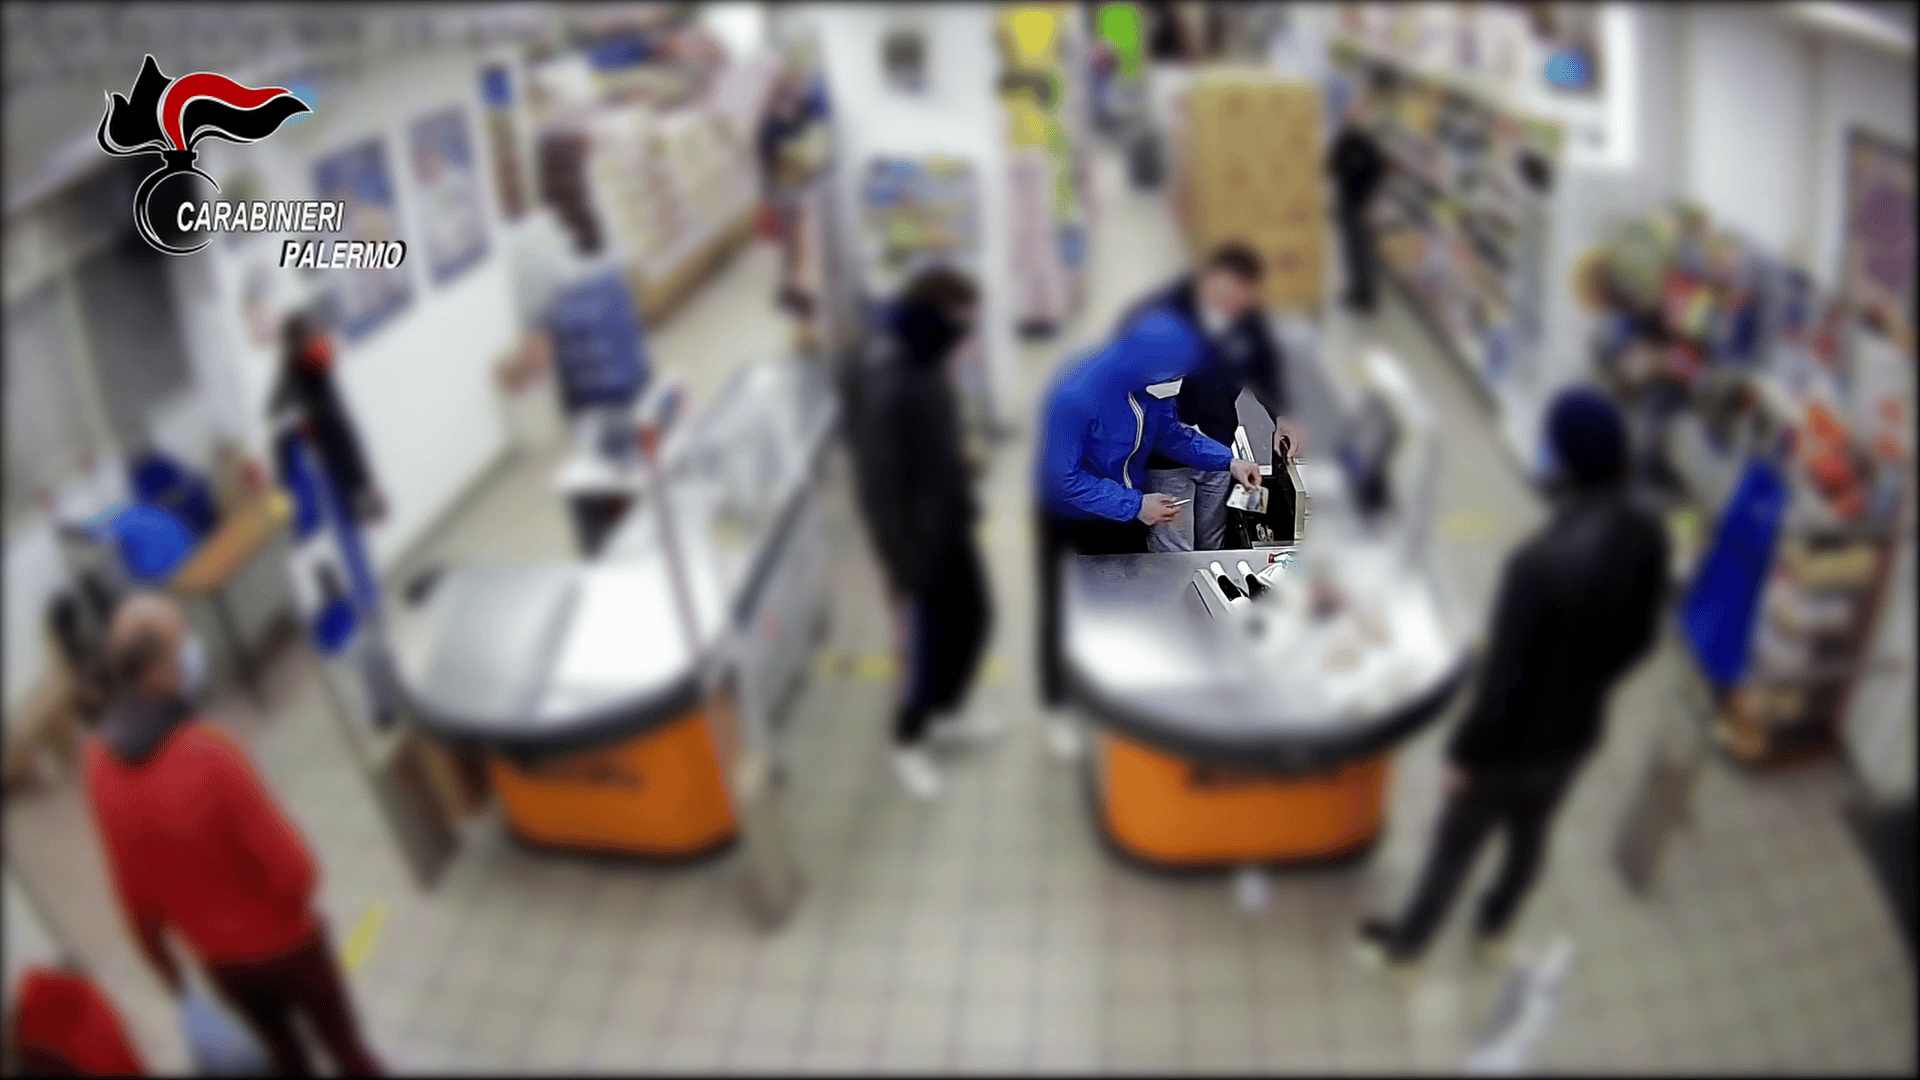 Rapina in un supermercato del centro, arrestati 2 giovanissimi: uno dei ladri è ancora minorenne